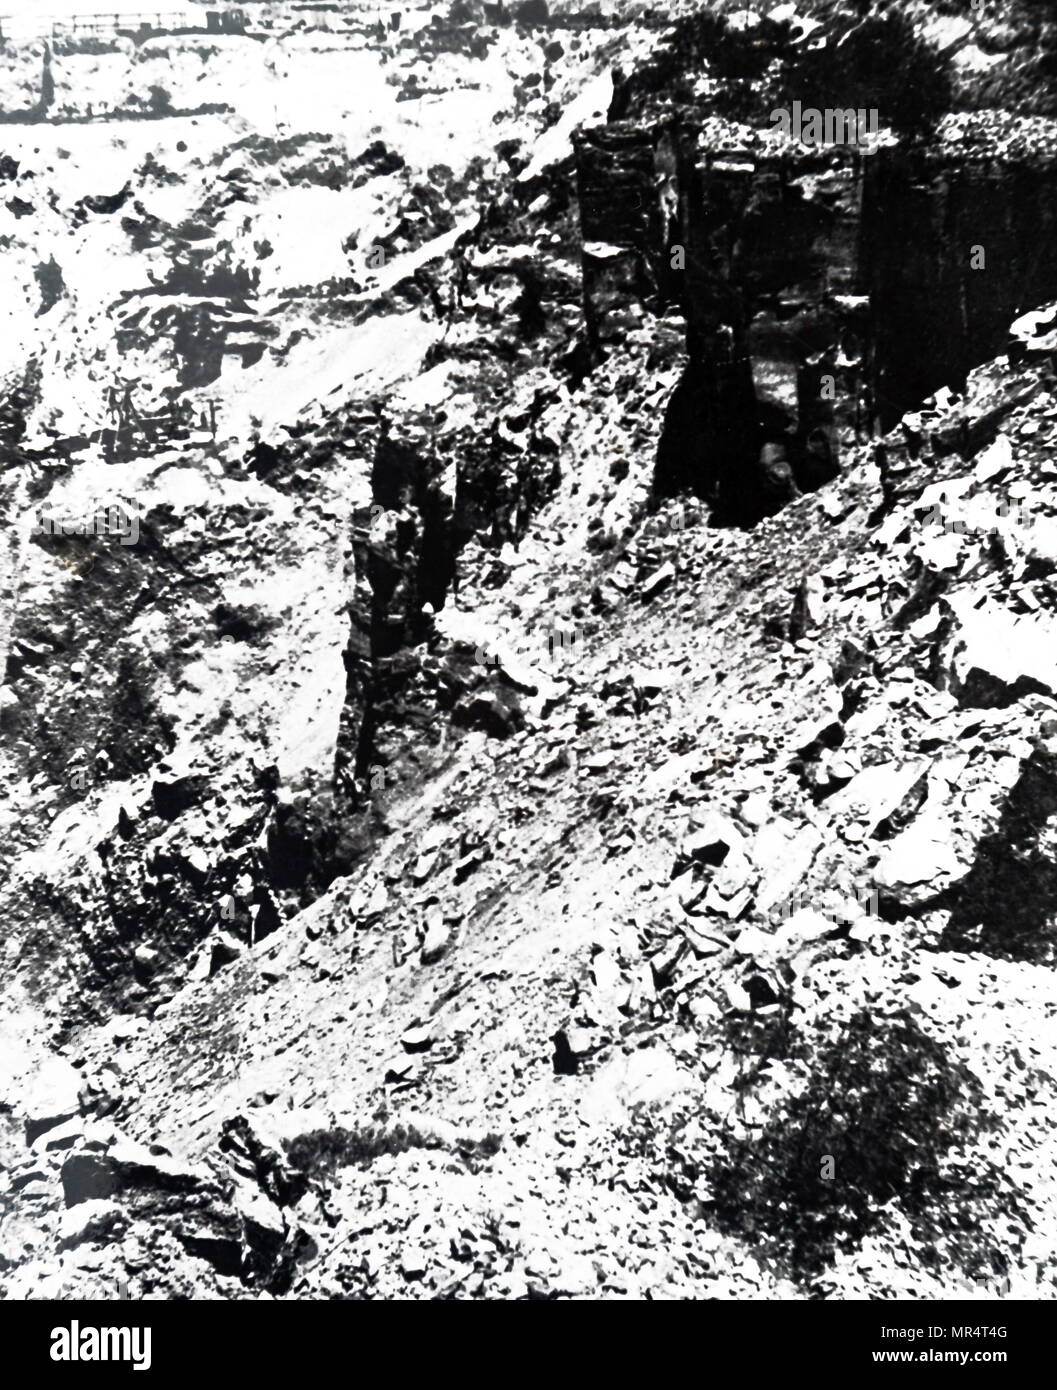 Fotografia delle lavorazioni presso la De Beers Diamond Mine fondata da Cecil Rhodes. Cecil Rhodes (1853-1902) un imprenditore britannico, mining magnate e politico in Sud Africa che ha servito come primo ministro della colonia del Capo dal 1890 al 1896. Datata del XIX secolo Foto Stock